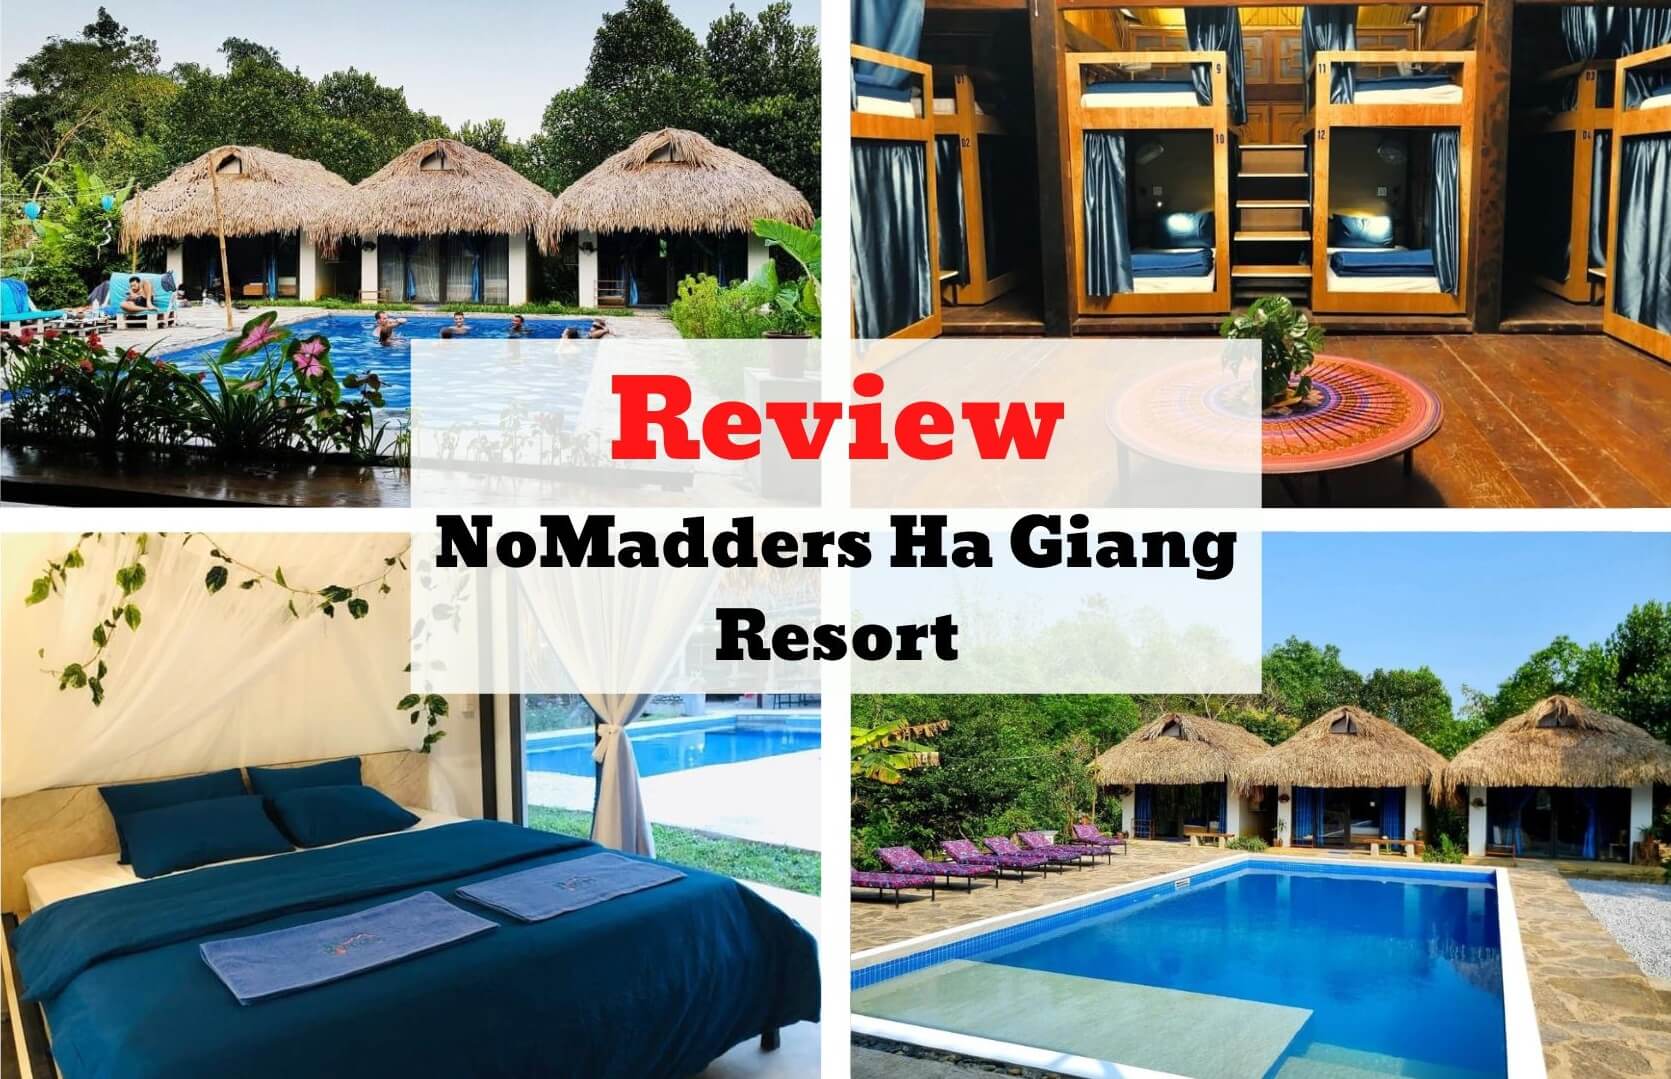 Review NoMadders Ha Giang Resort - Thiết kế độc lạ nơi địa đầu Tổ Quốc